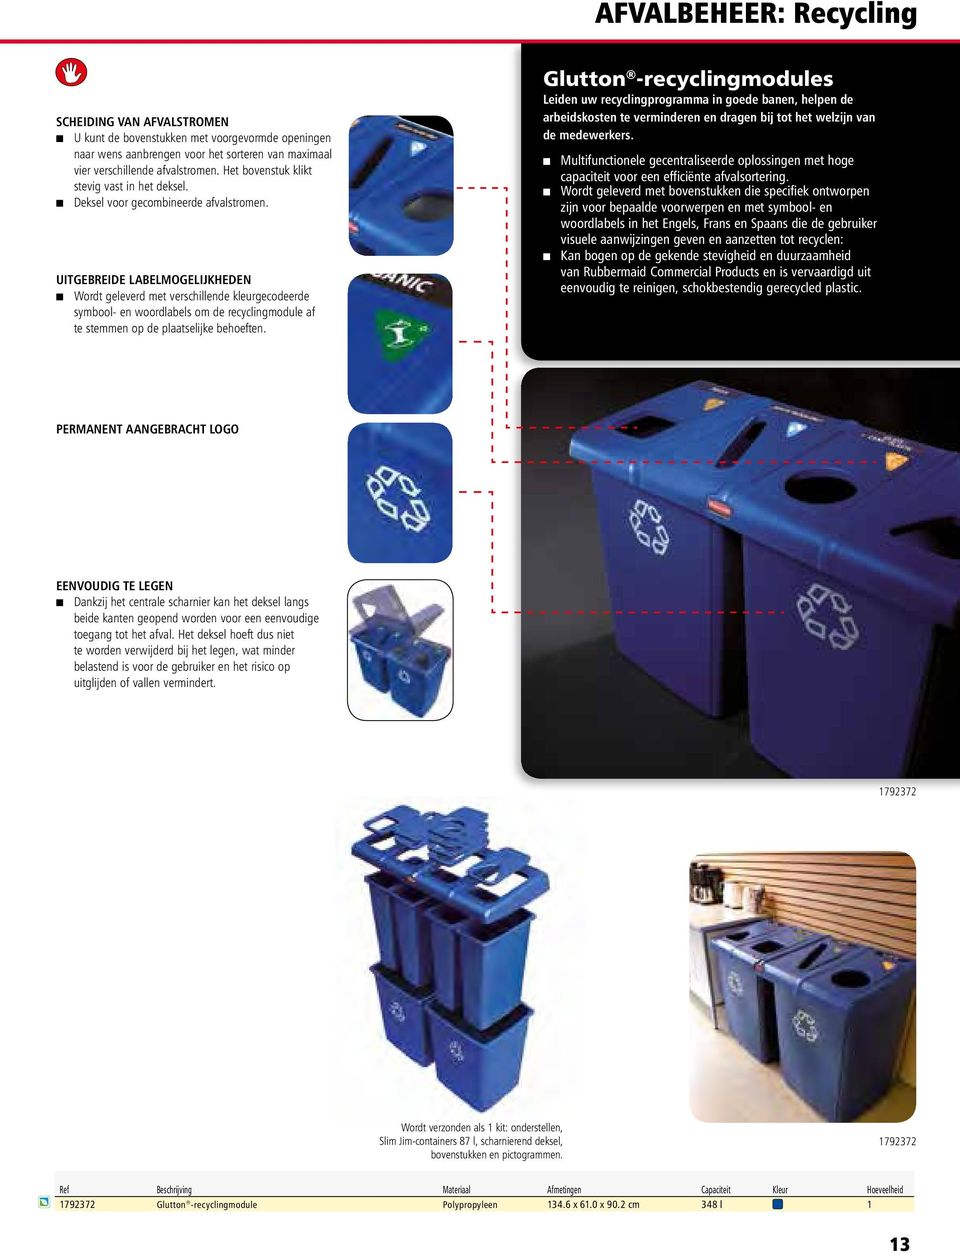 UITGEBREIDE LABELMOGELIJKHEDEN Wordt geleverd met verschillende kleurgecodeerde symbool- en woordlabels om de recyclingmodule af te stemmen op de plaatselijke behoeften.